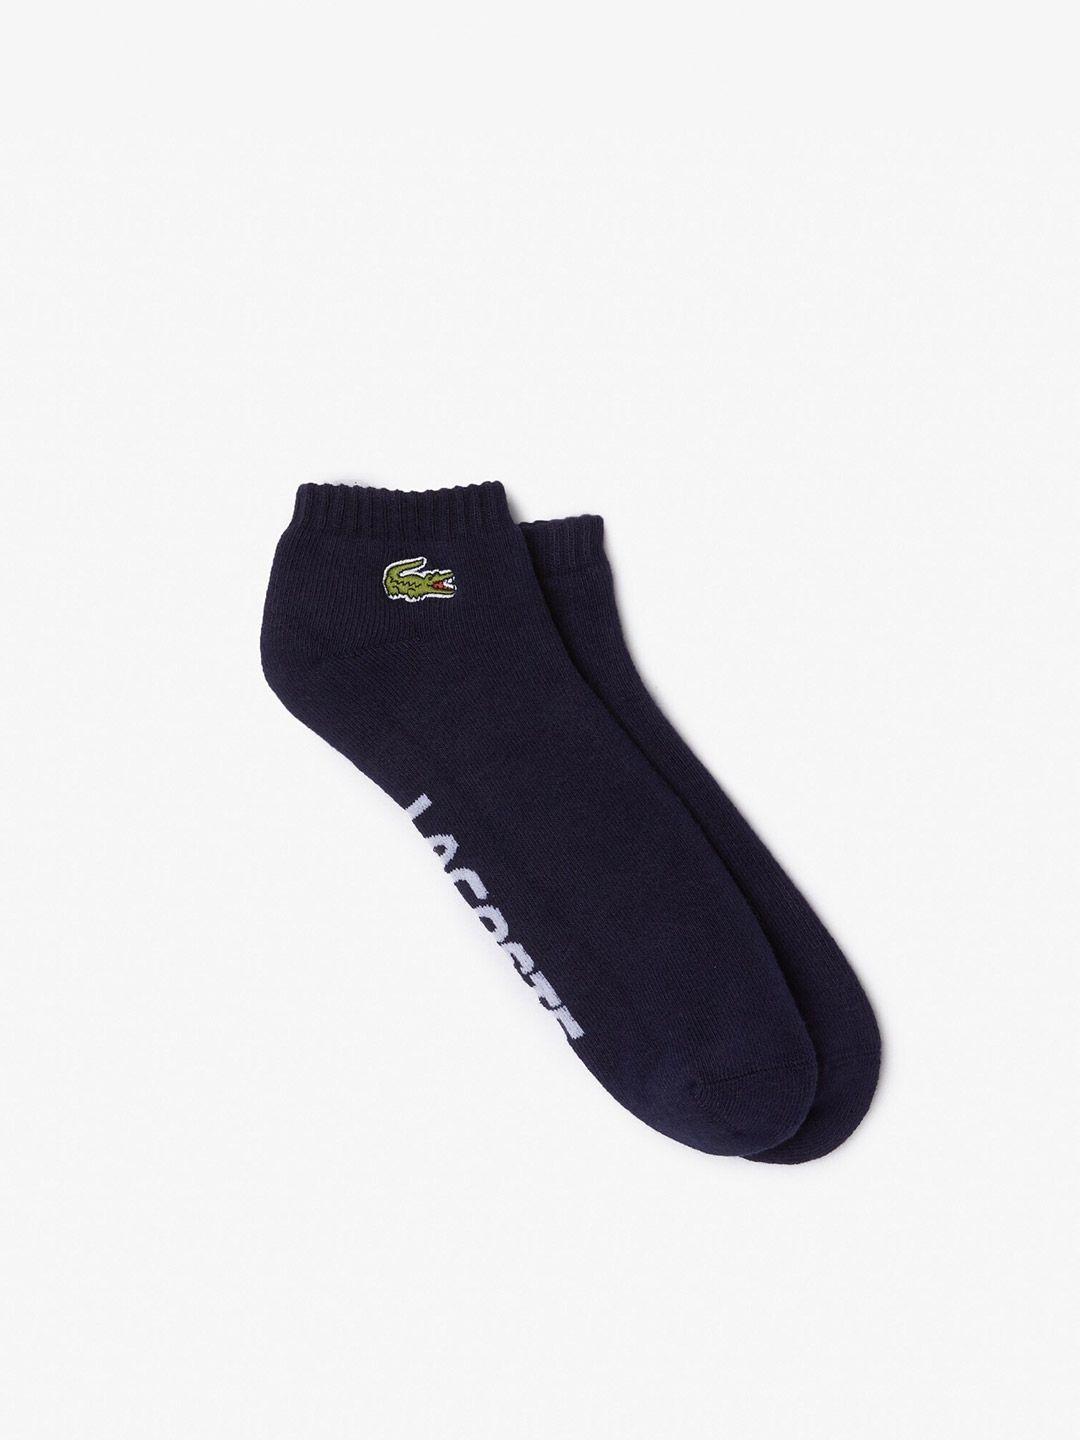 lacoste-men-patterned-ankle-length-socks